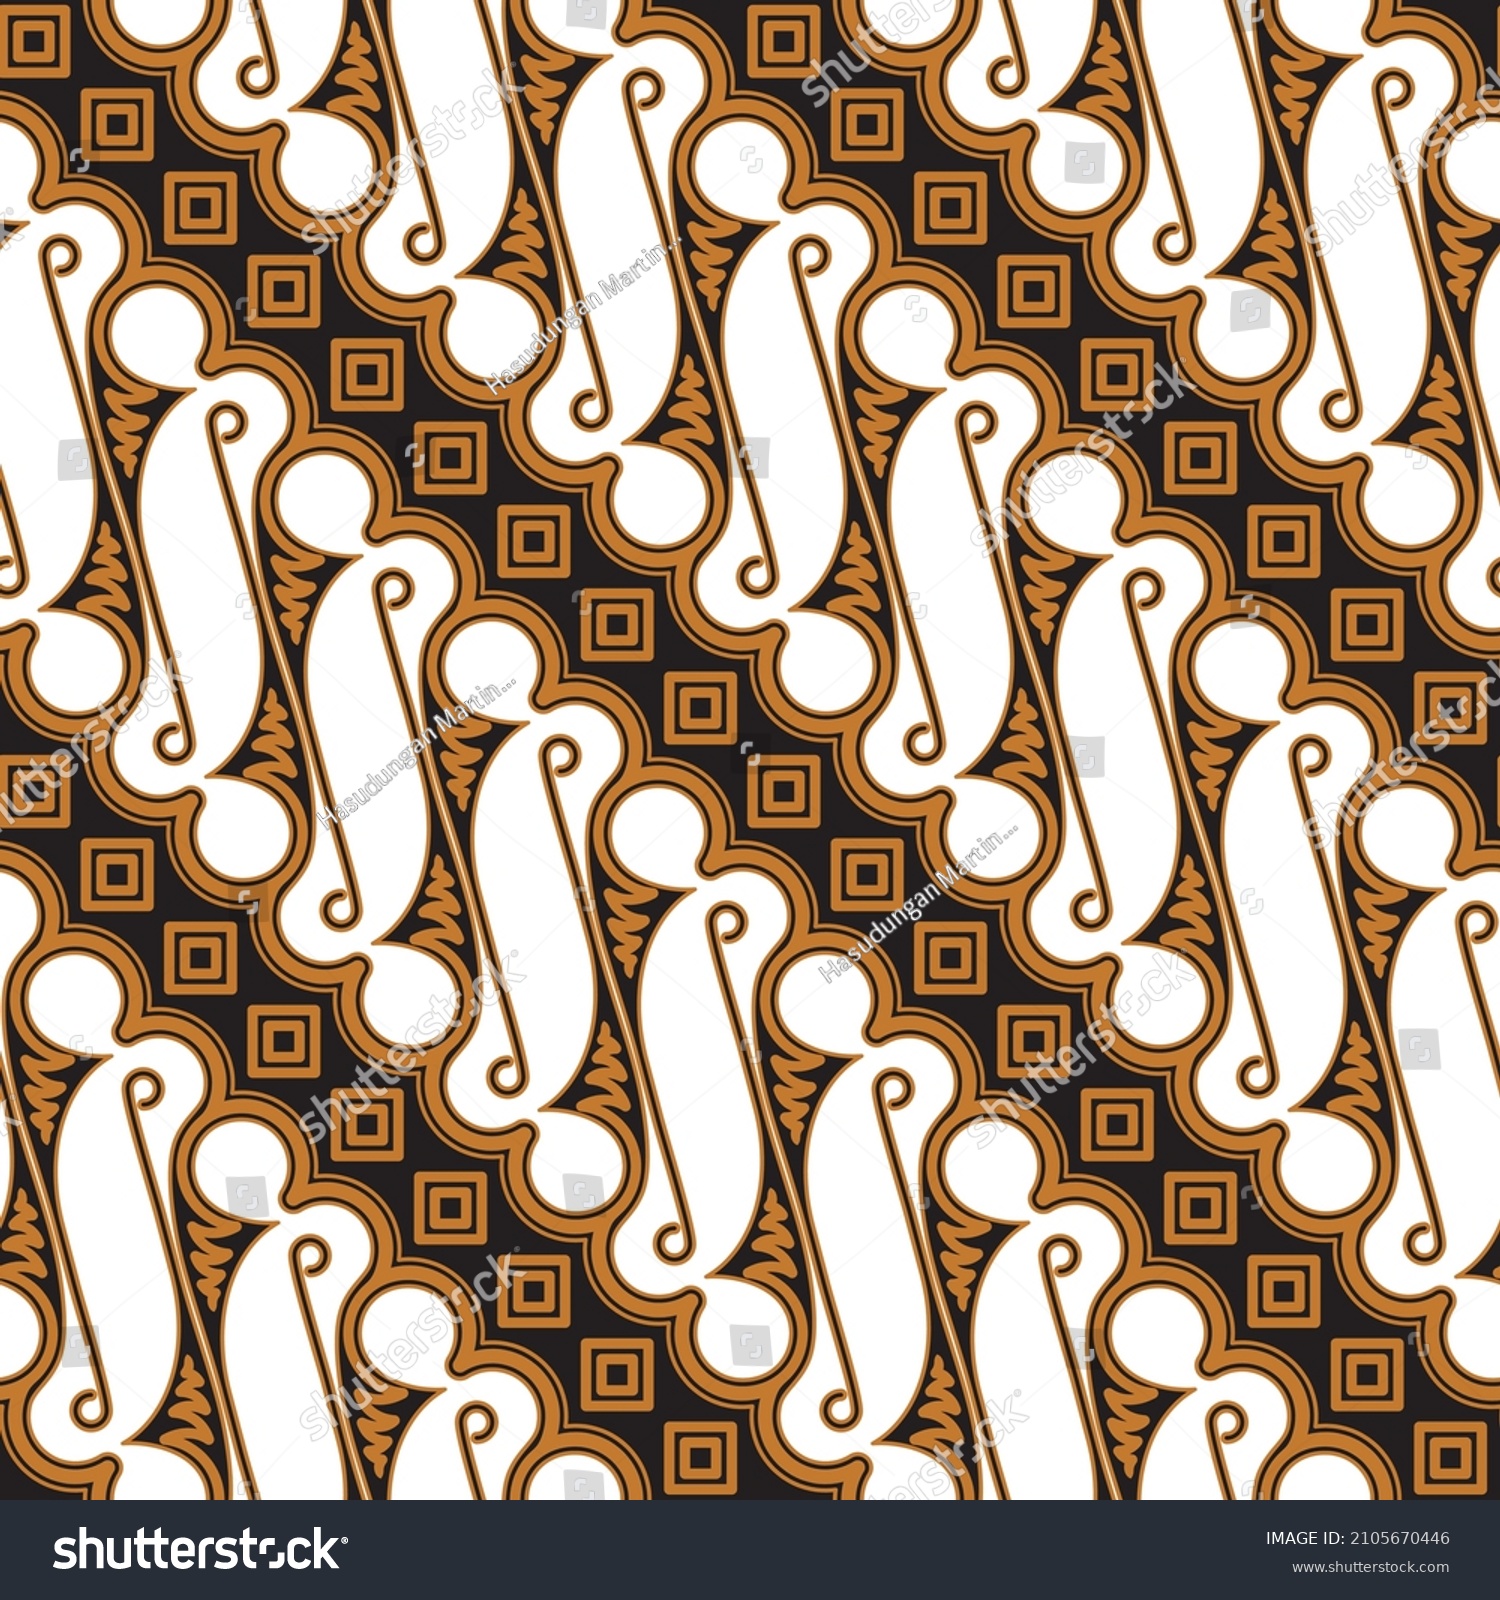 SVG of Traditional Javanese Batik, Parang pattern version 01.
Batik Jawa tradisional, motif Parang versi 01. svg